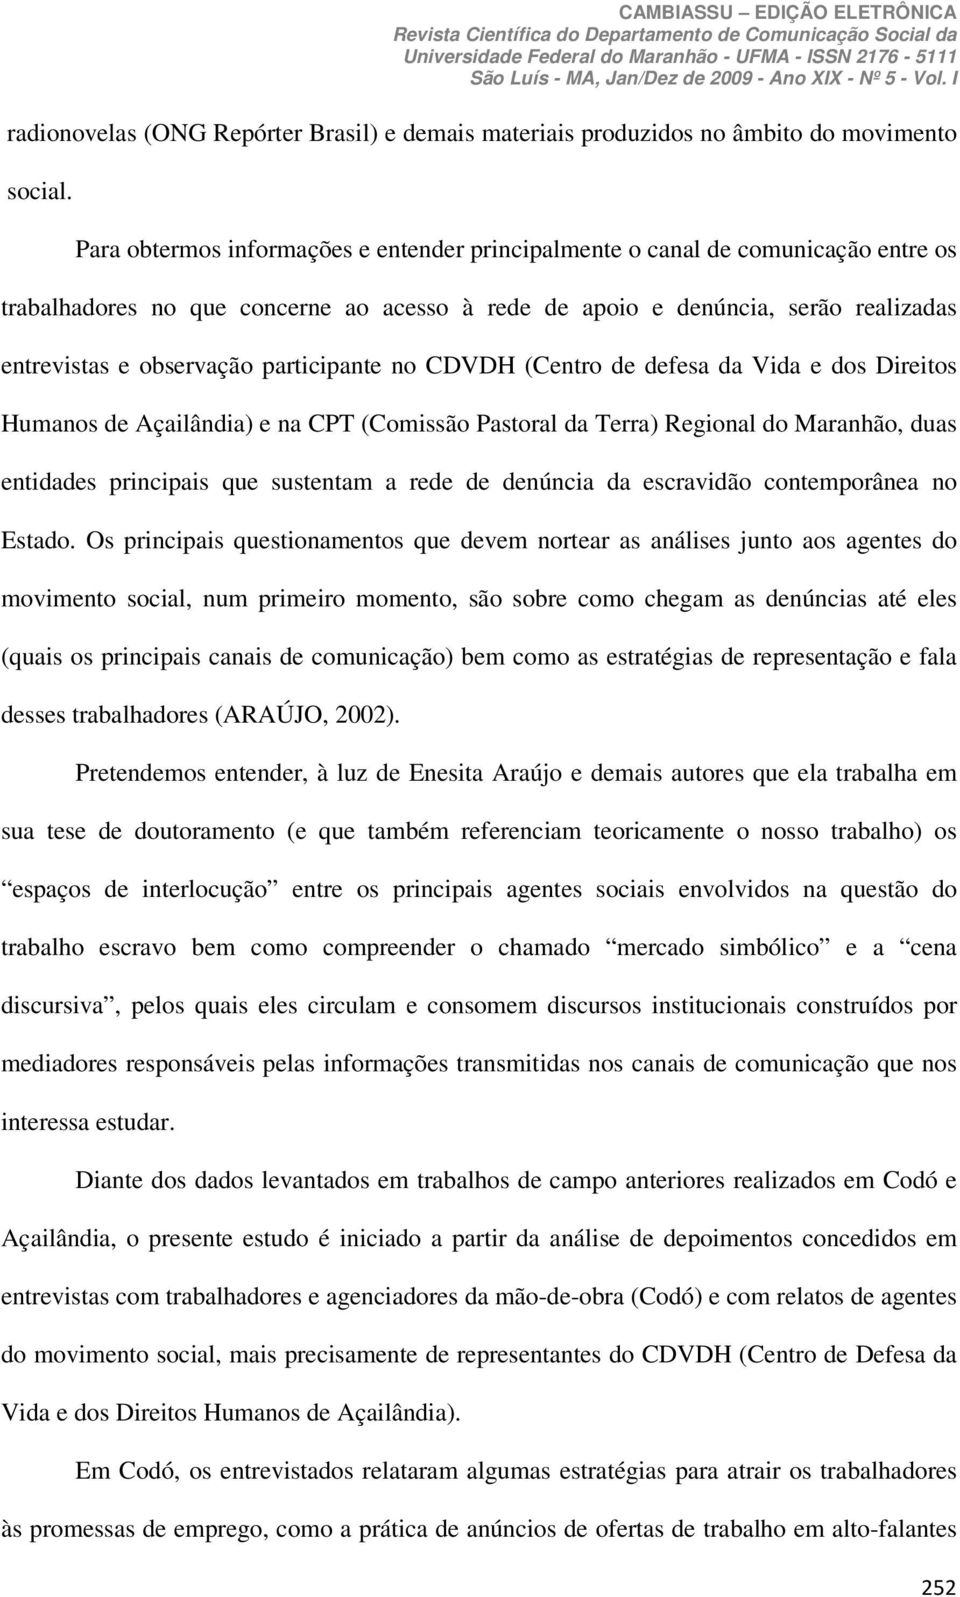 participante no CDVDH (Centro de defesa da Vida e dos Direitos Humanos de Açailândia) e na CPT (Comissão Pastoral da Terra) Regional do Maranhão, duas entidades principais que sustentam a rede de